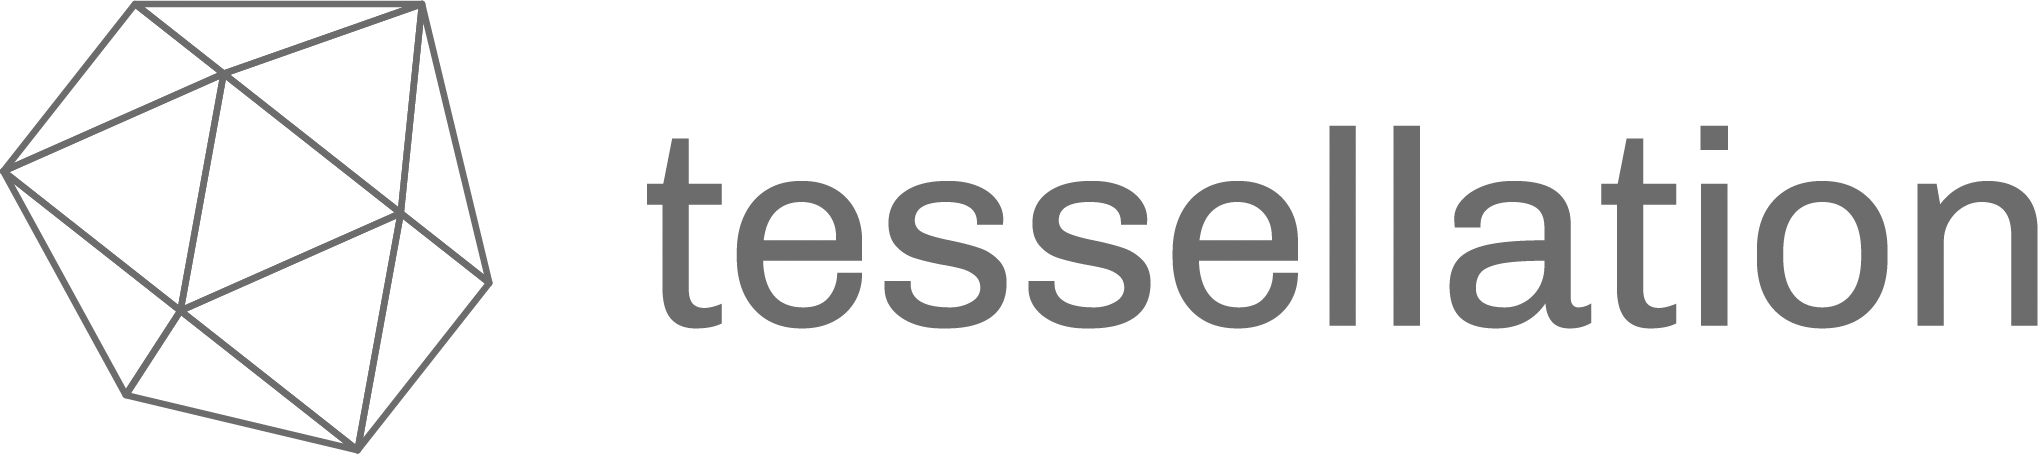 Tessellation_Logo_v5-01-grey